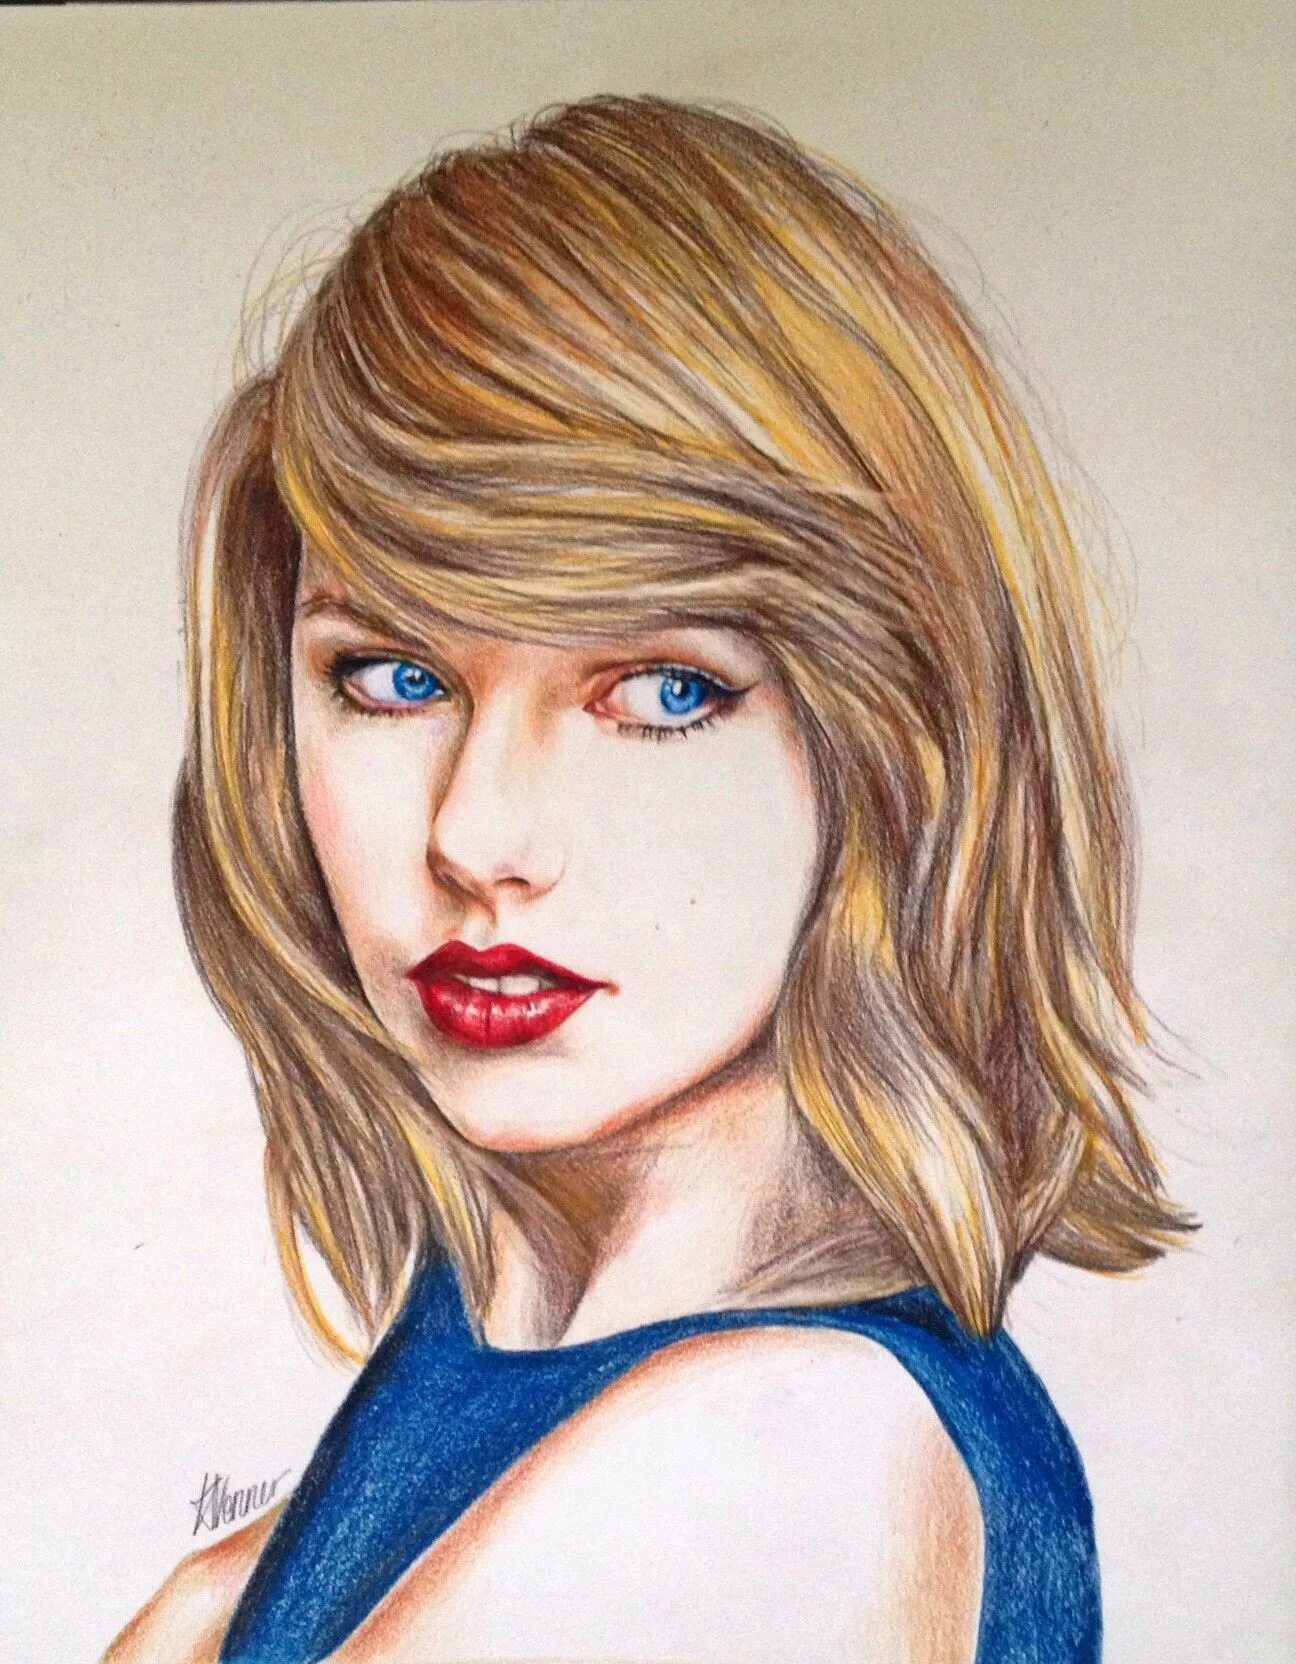 Цветные рисунки человека. Тейлор Свифт портрет. Тейлор Свифт художник. Тейлор Свифт рисунок. Taylor Swift портрет artistic.